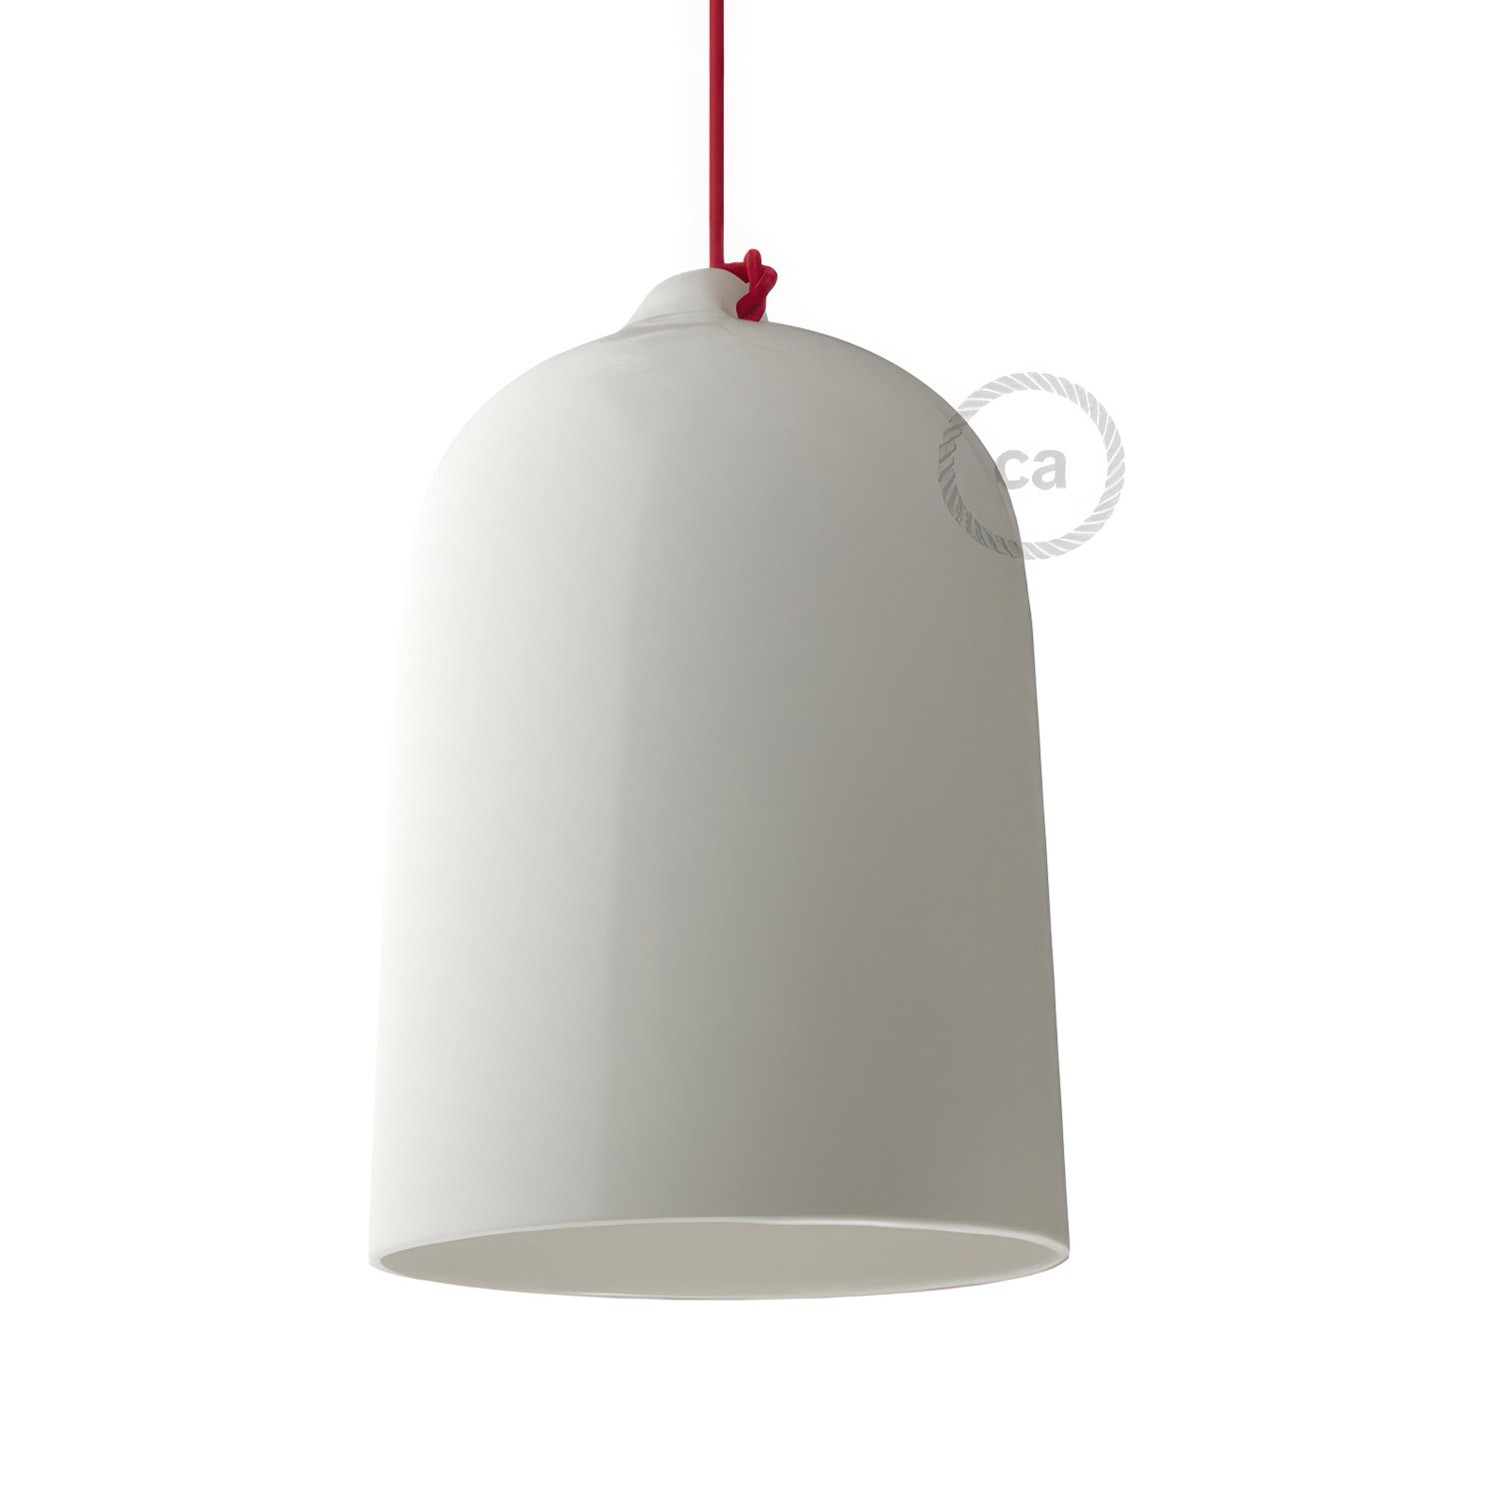 Glockenförmiger Lampenschirm XL aus Keramik zum Aufhängen - Made in Italy